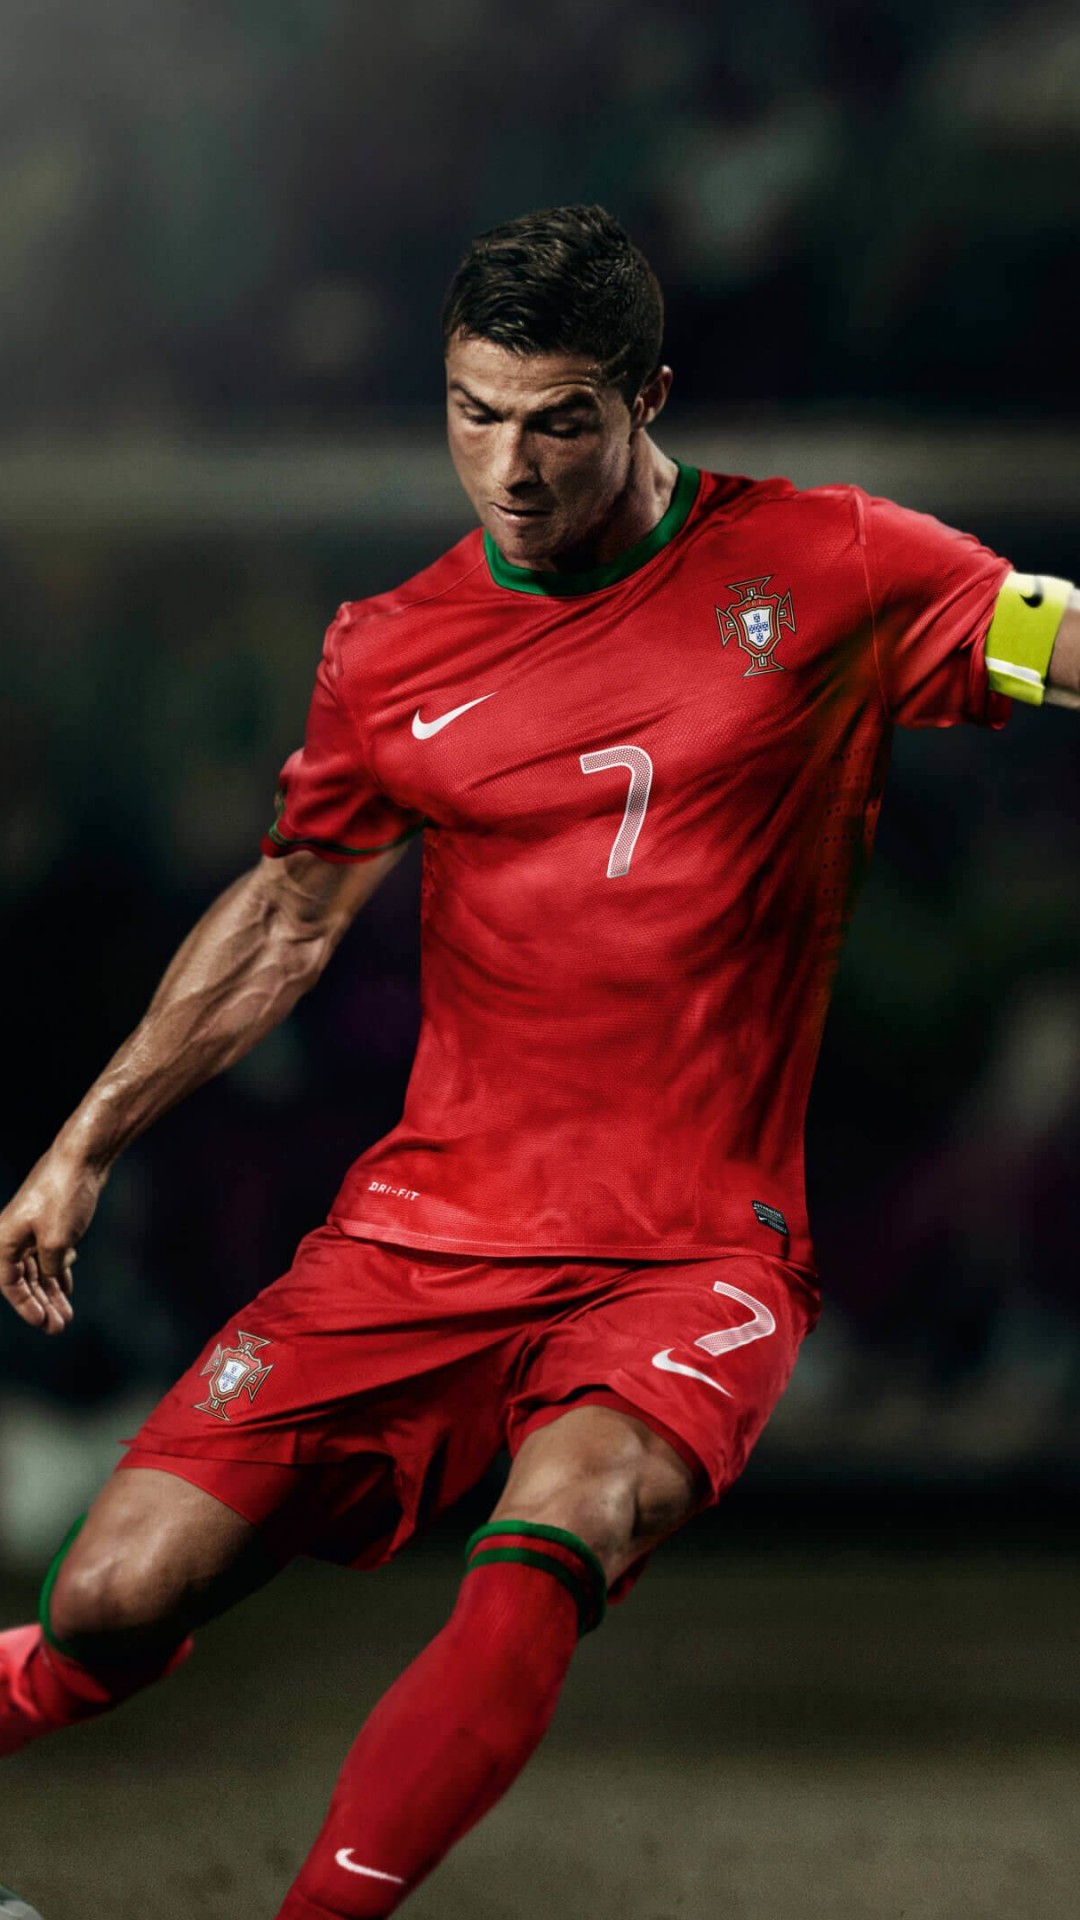 Cristiano Ronaldo In Portugal Jersey Wallpaper for SONY Xperia Z1